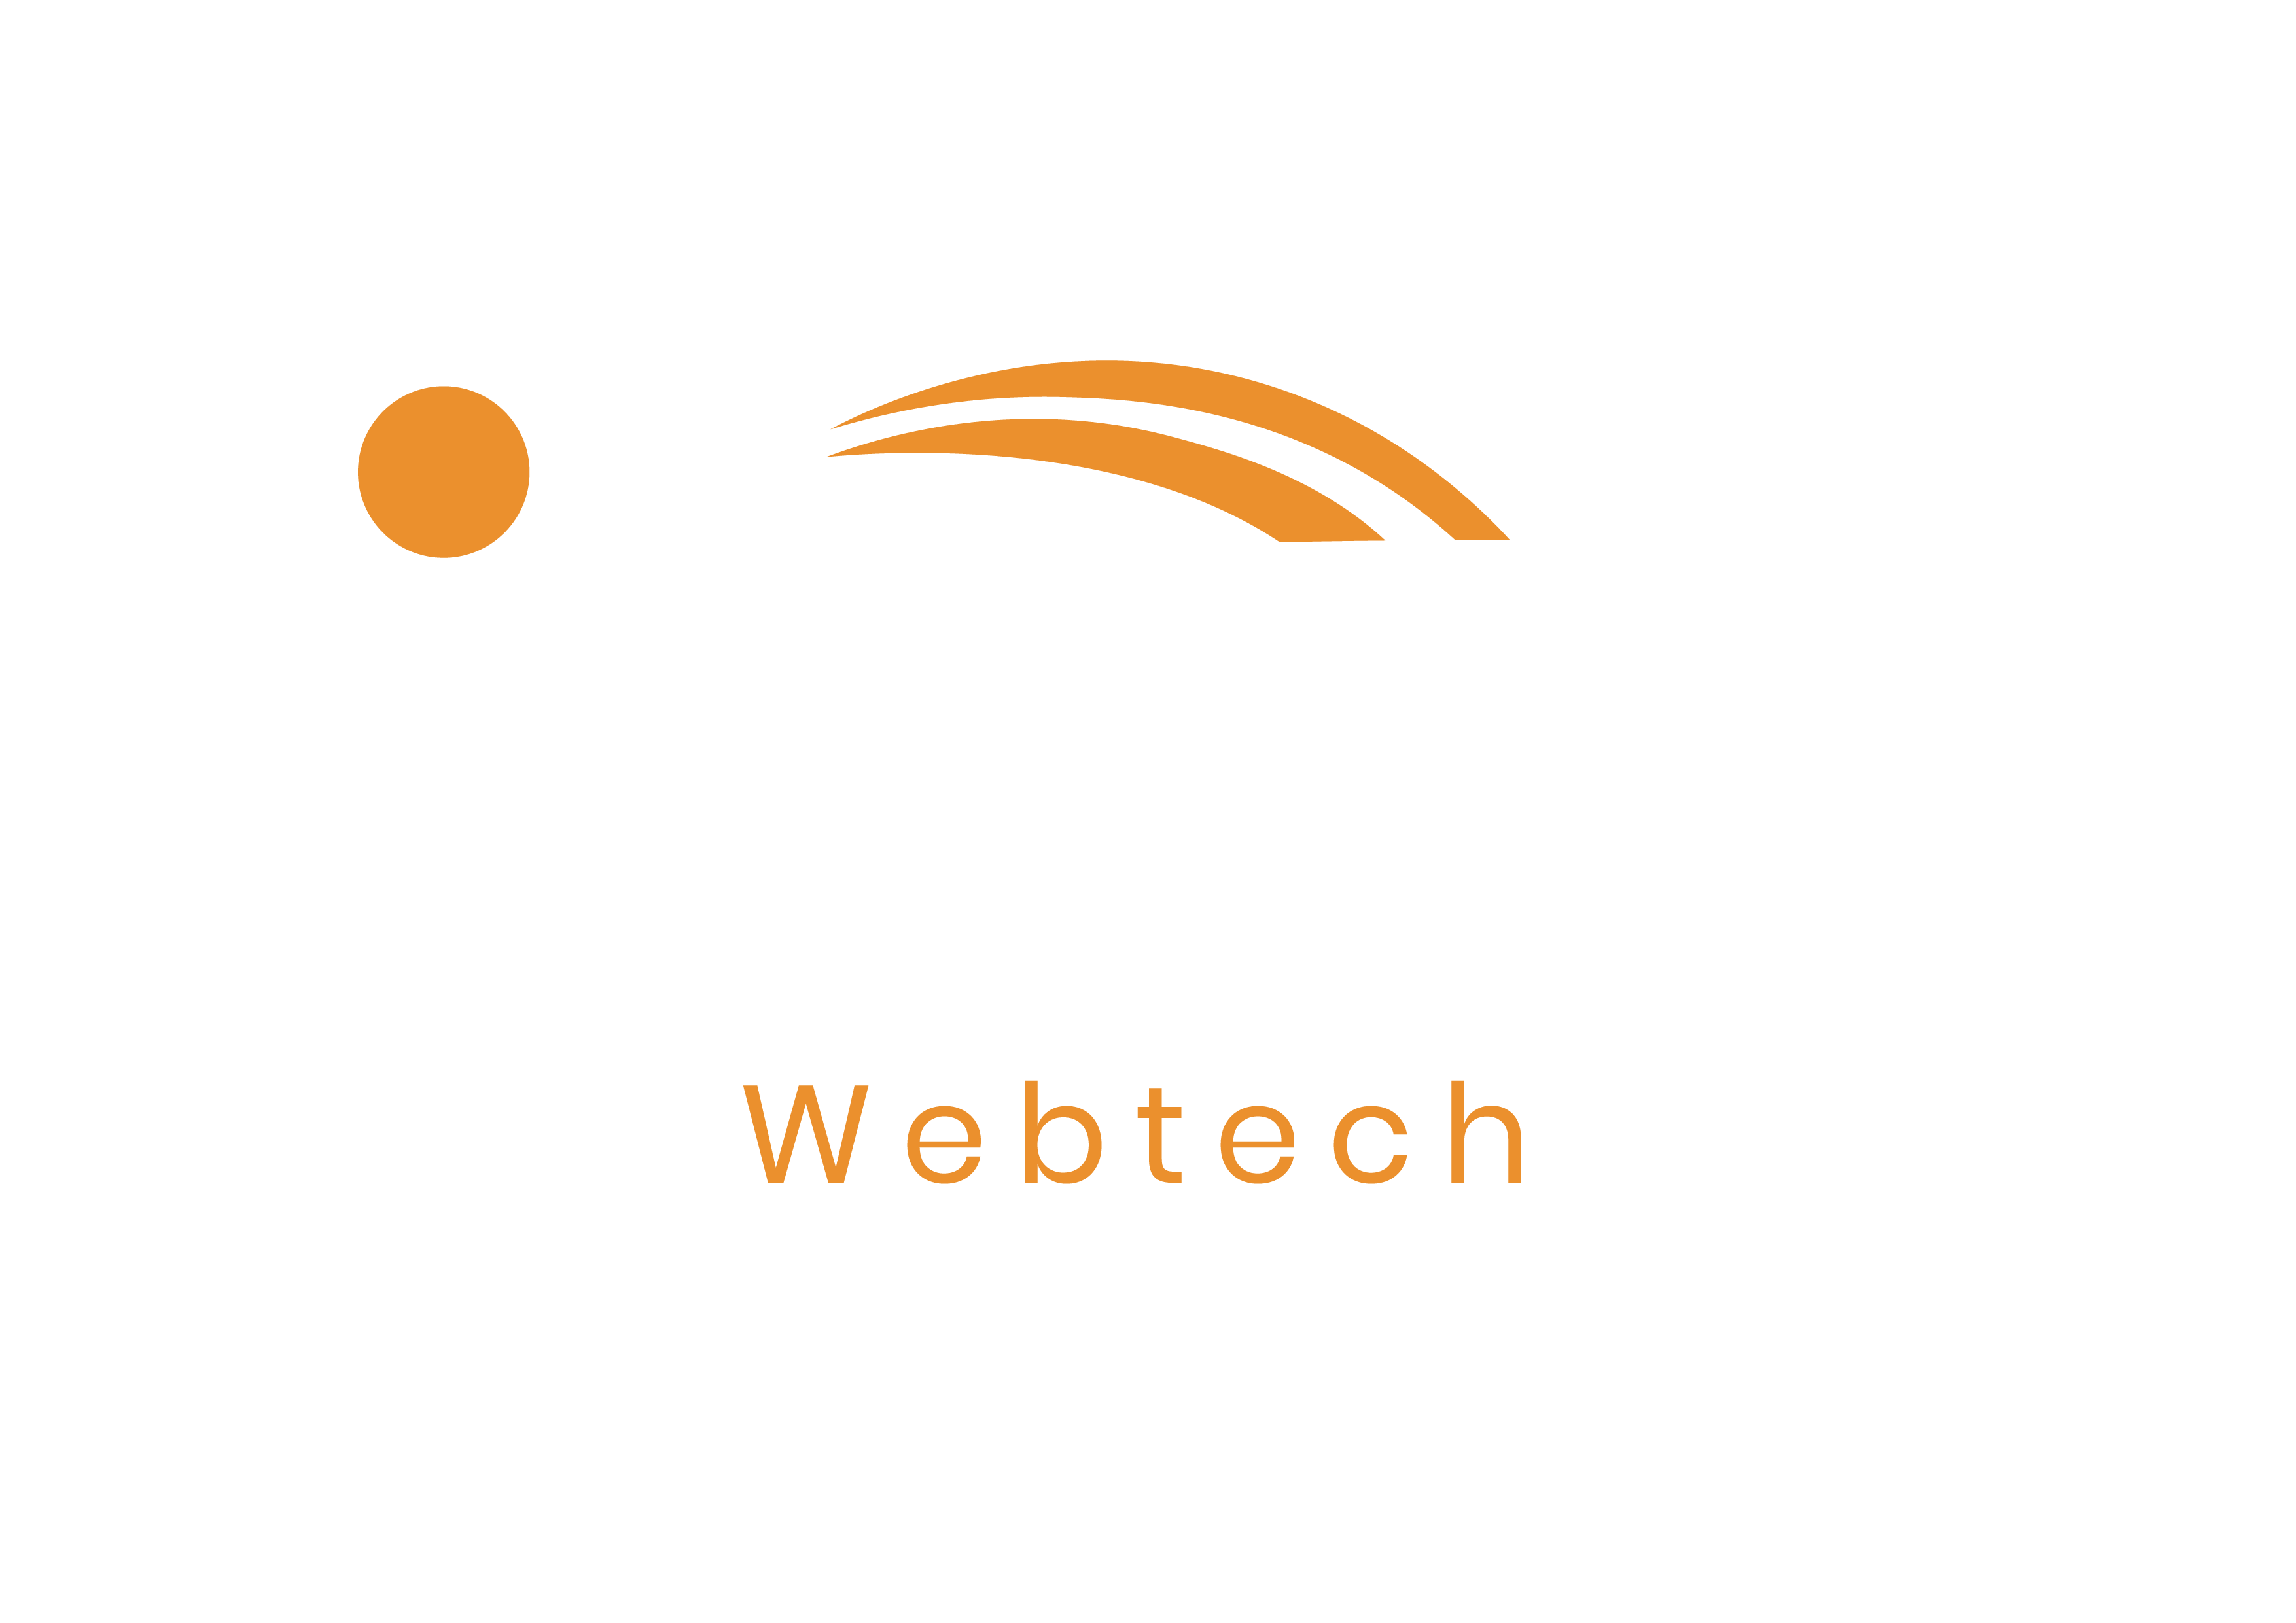 ibex WebTech